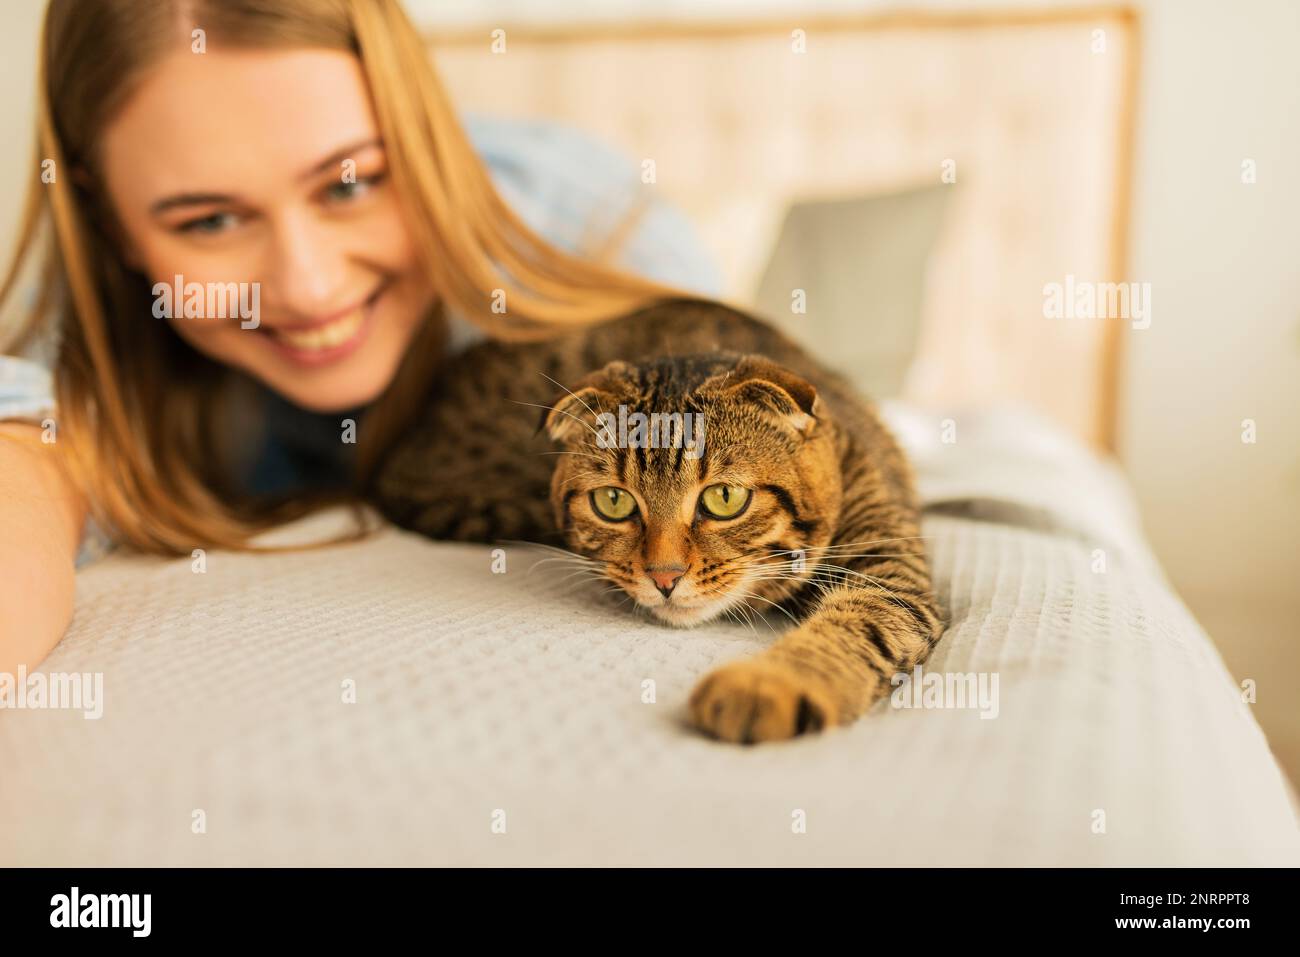 Lächelnde junge blonde Frau, die in ihrem Bett im Hemd lag, ein süßes Haustier streichelte und zu Hause schottische Tabby-Katze spielte, Konzept von liebenden und fürsorglichen Haustieren Stockfoto